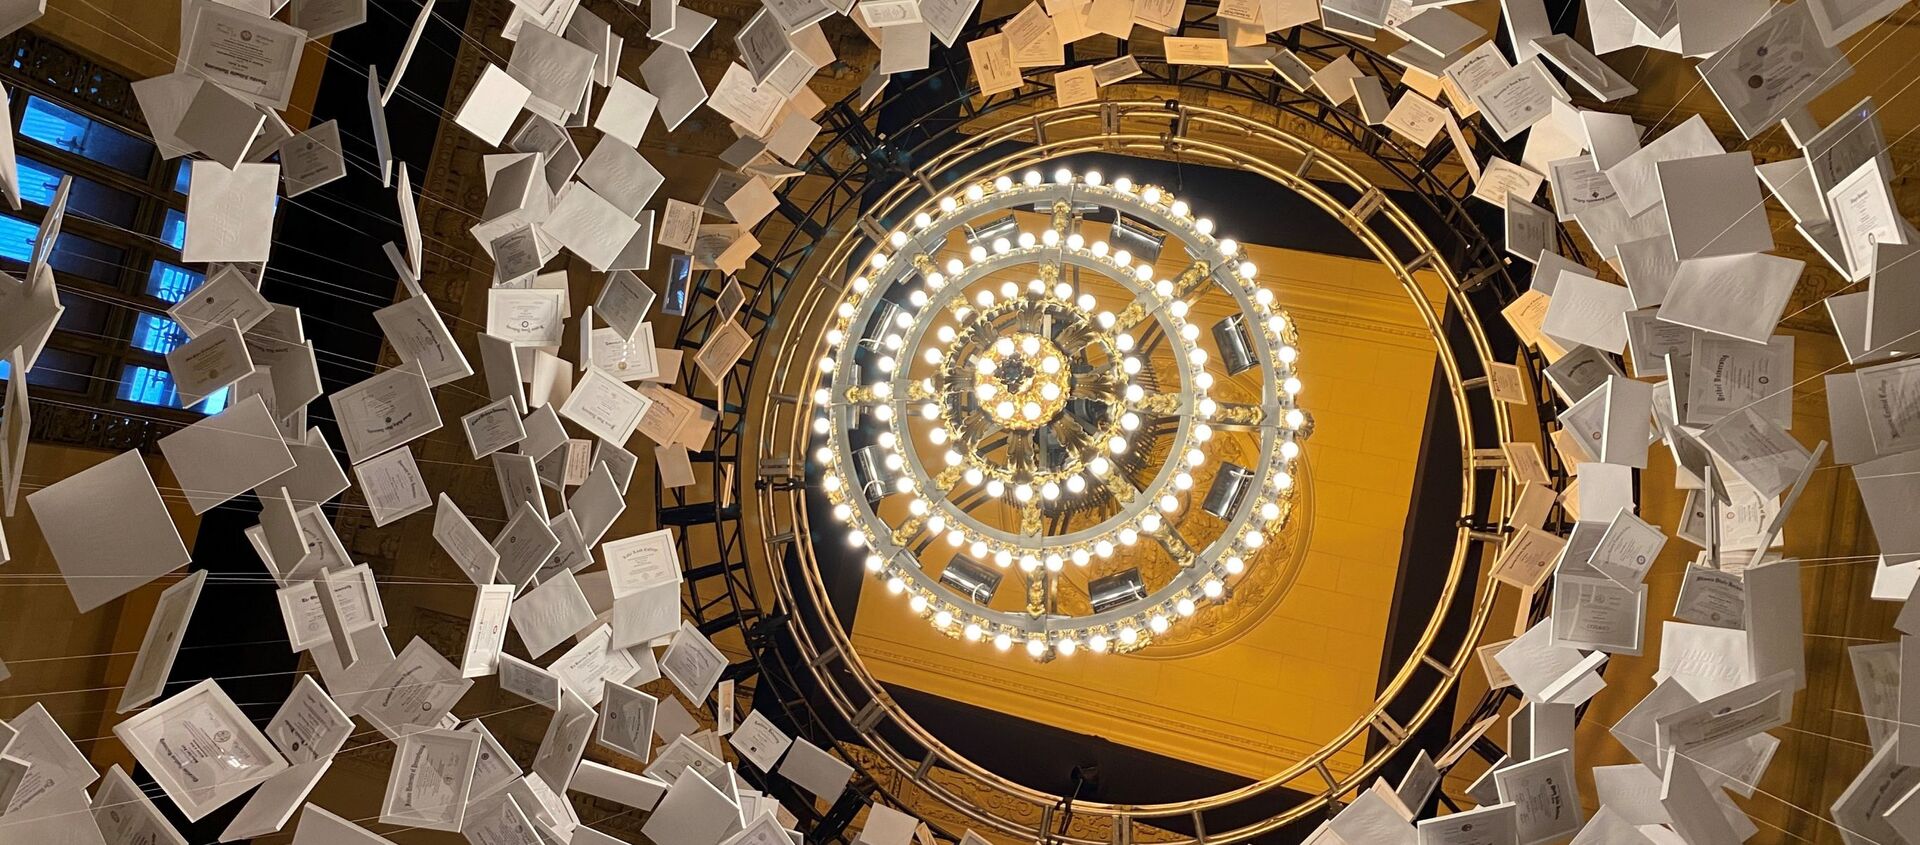 ABD’nin Grand Central İstasyonu'nunda sergilenen, 14 metrelik yükseklikte, tamamı gerçek 2 bin 600 üniversite diplomasından yapılmış ve degeri 470 milyon dolar olan, dünyanın en pahalı sanat eseri 'Da Vinci of Dept' ziyaretçi akınına uğradı. - Sputnik Türkiye, 1920, 17.01.2021